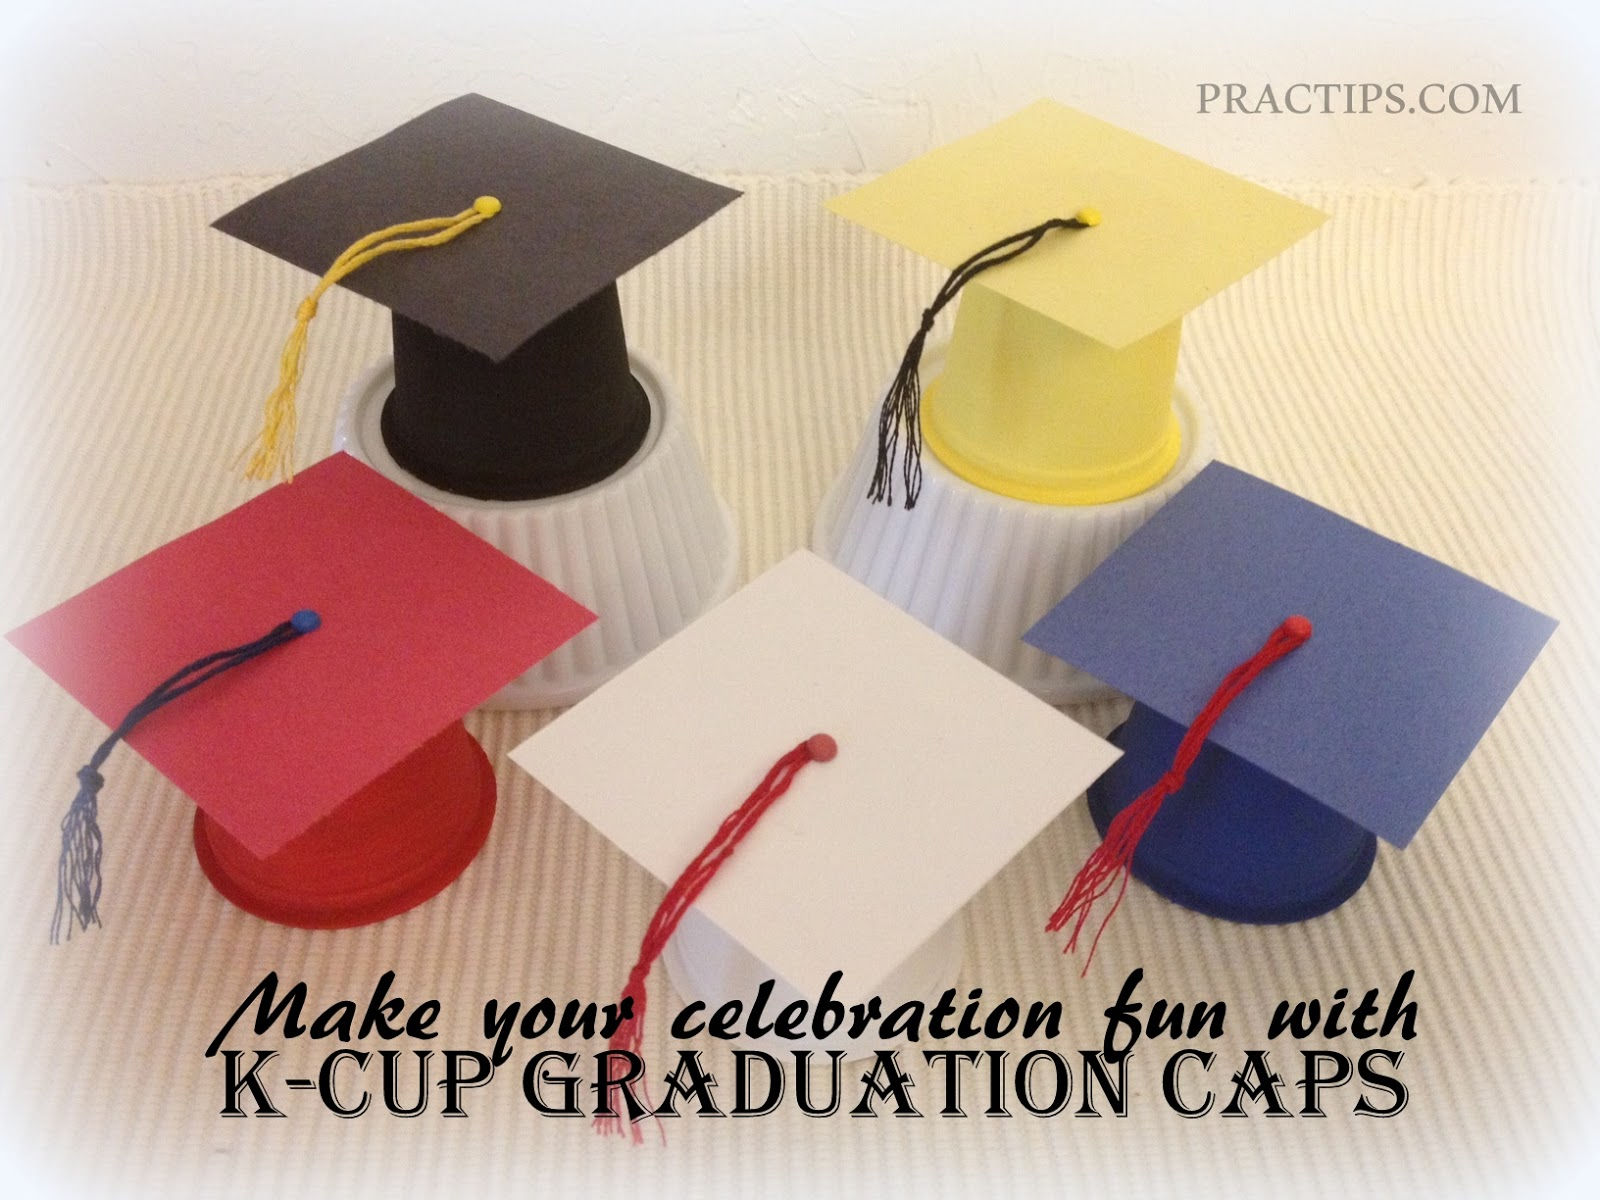 K-cup Graduation Caps